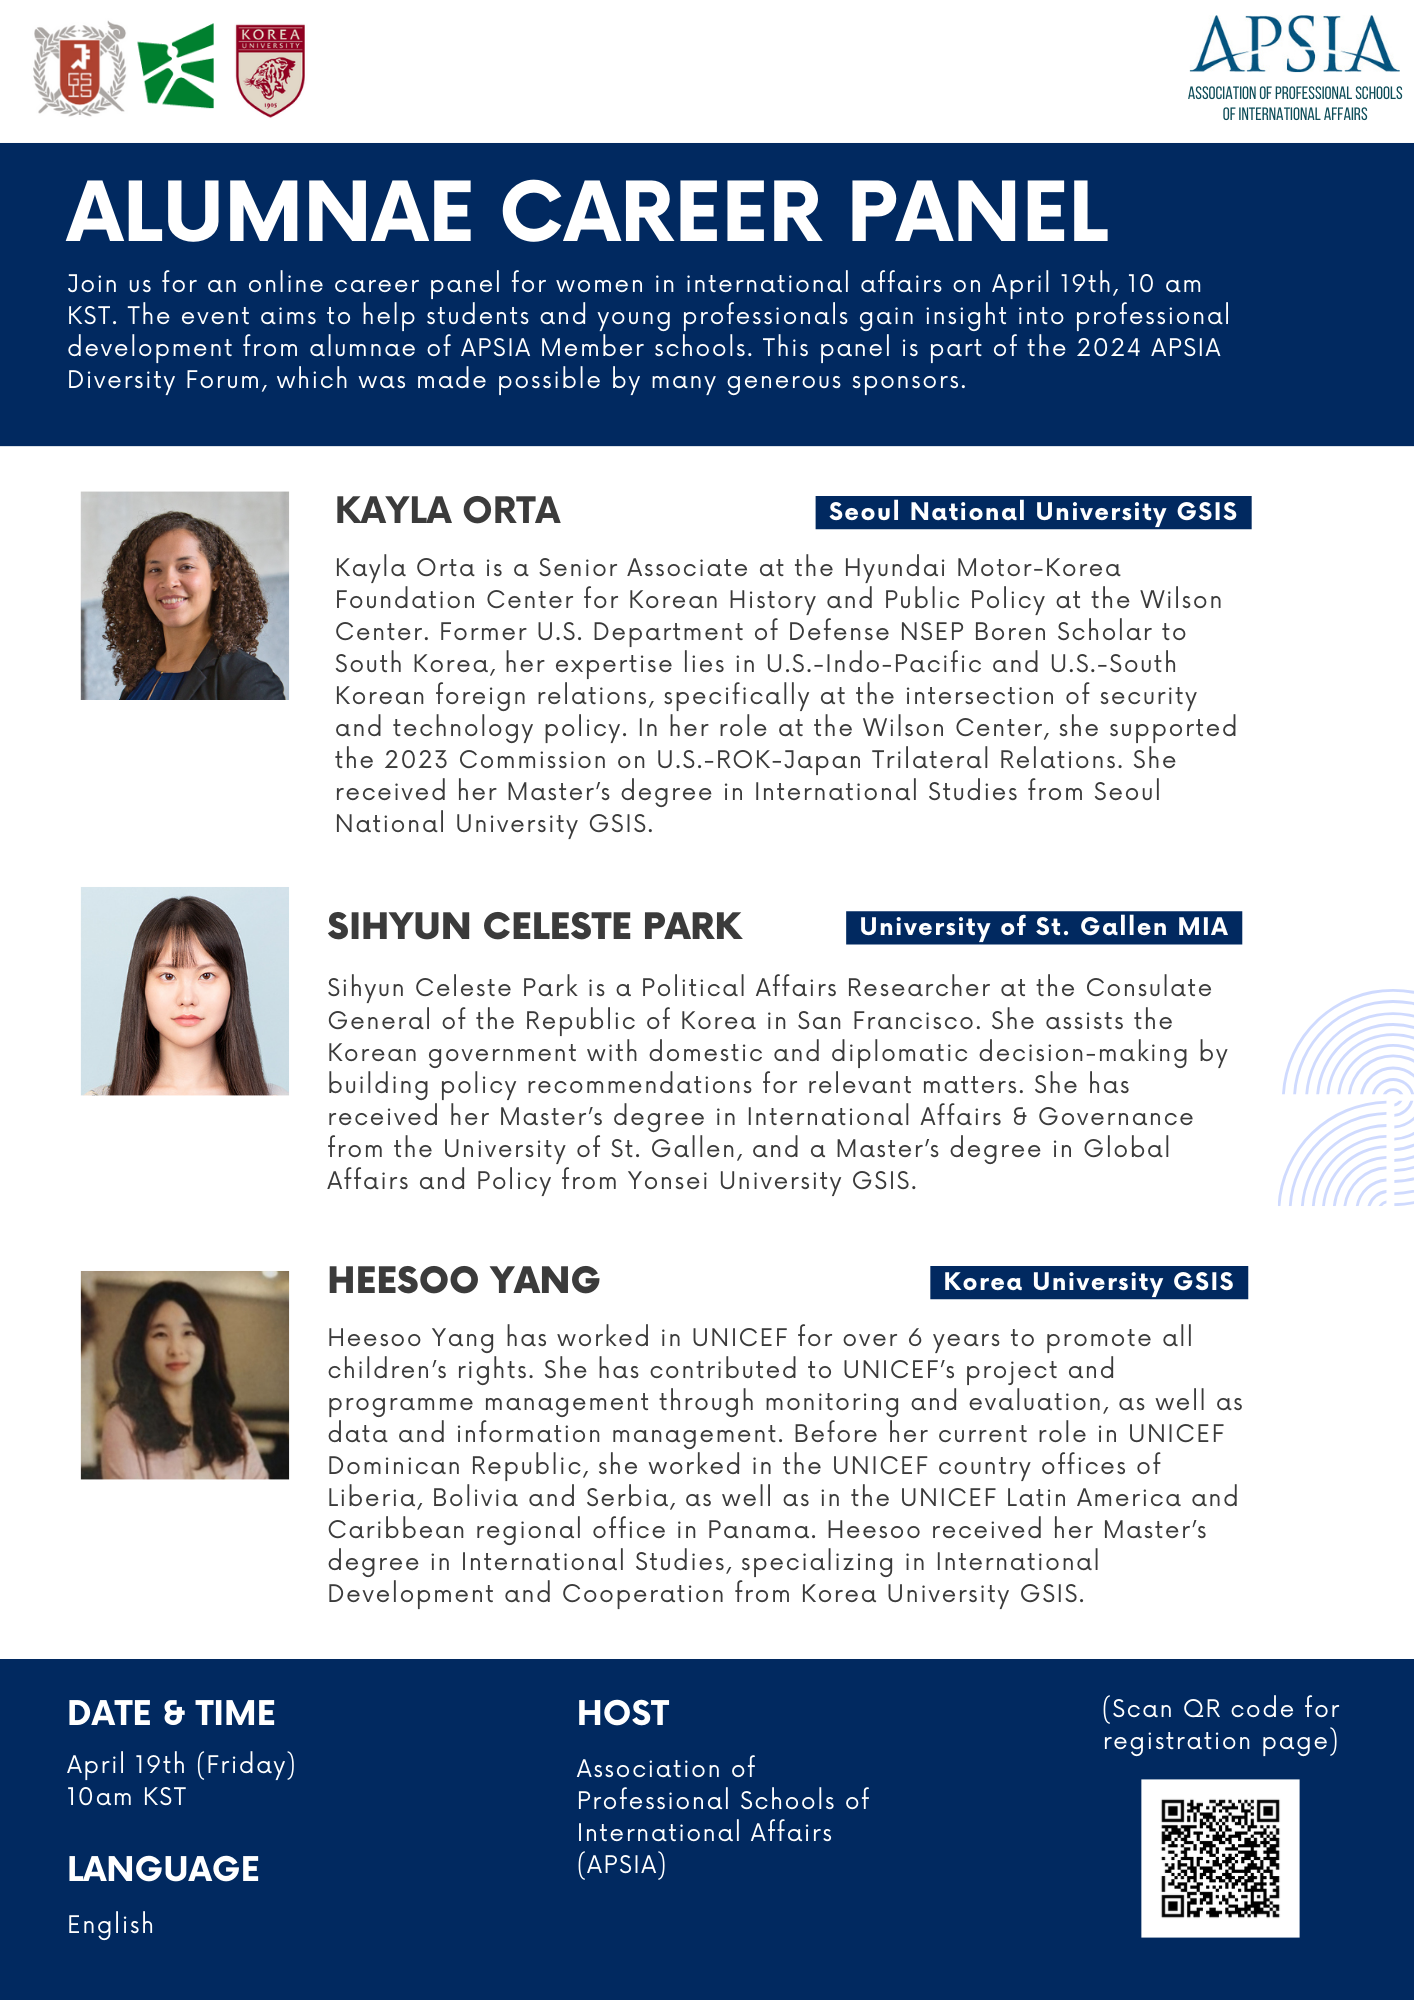 Fourth Annual Korean Alumnae Panel Explores International Affairs Careers